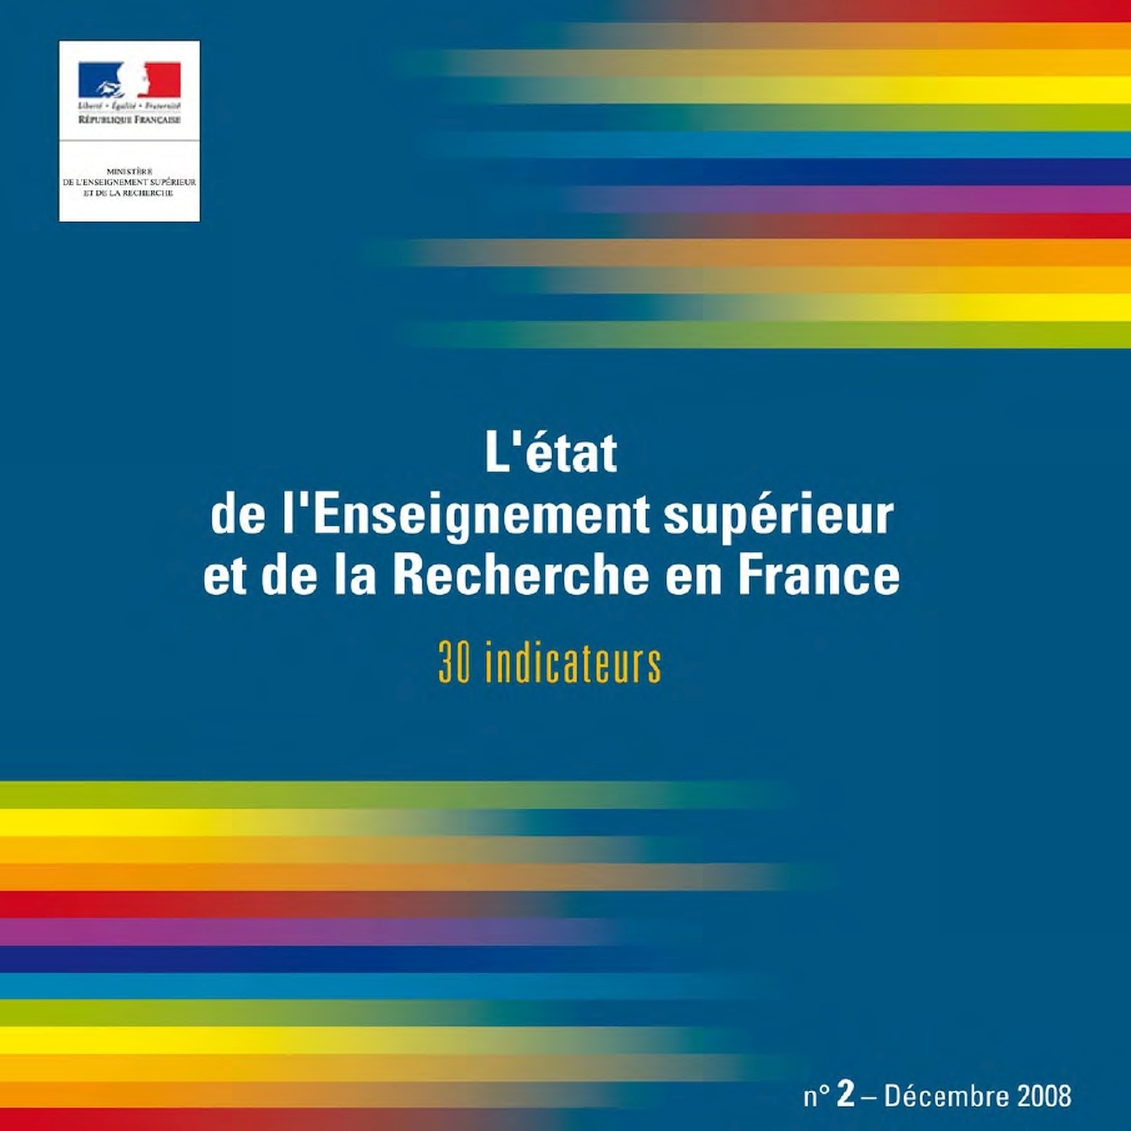 L'état de l'Enseignement supérieur et de la Recherche en France - 30 indicateurs - n°2 - Décembre 2008